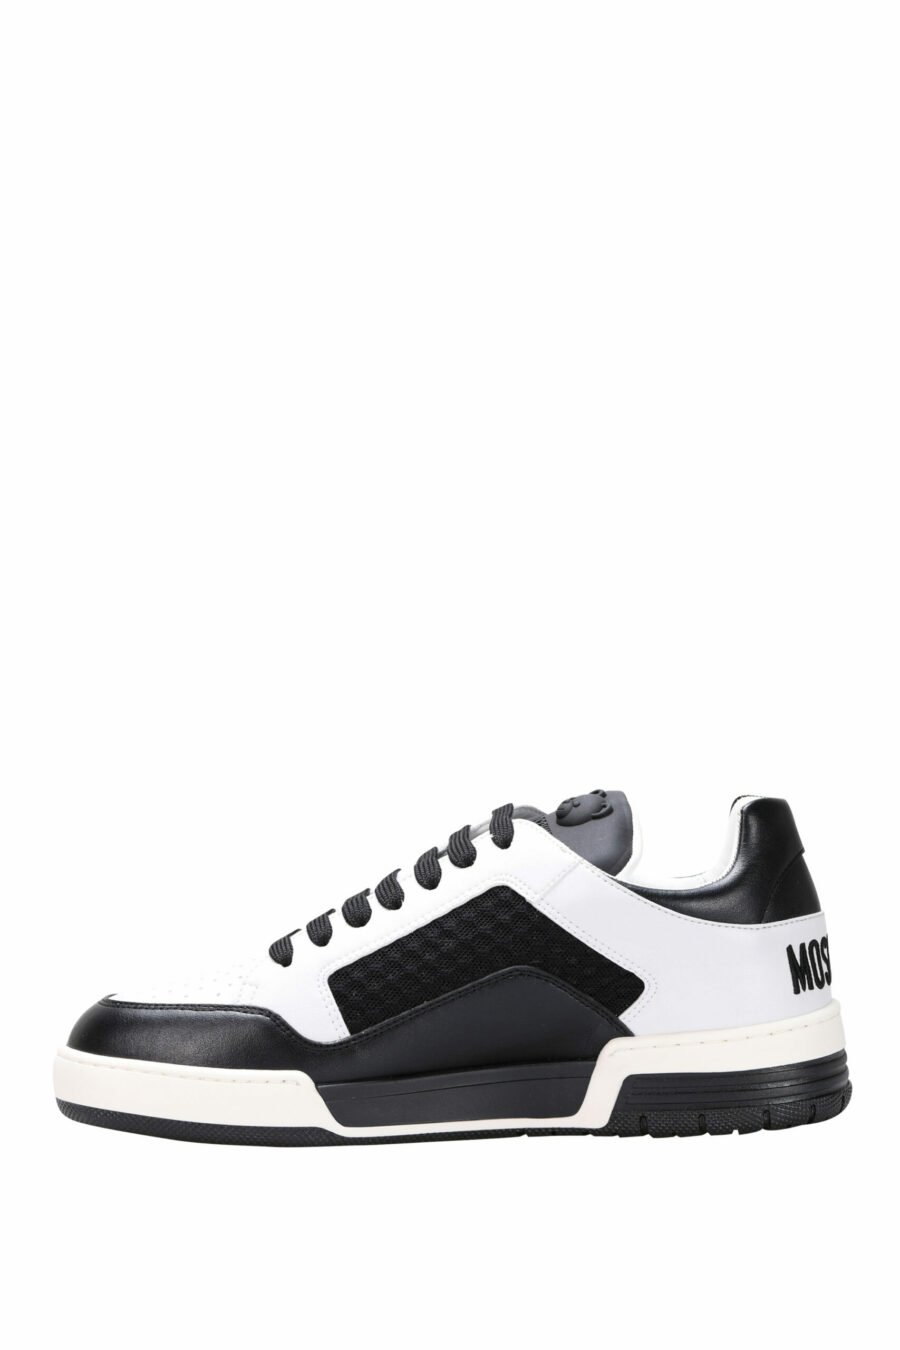 Zapatillas bicolor negras y blanco "kevin40" con minilogo - 8054388024457 2 scaled